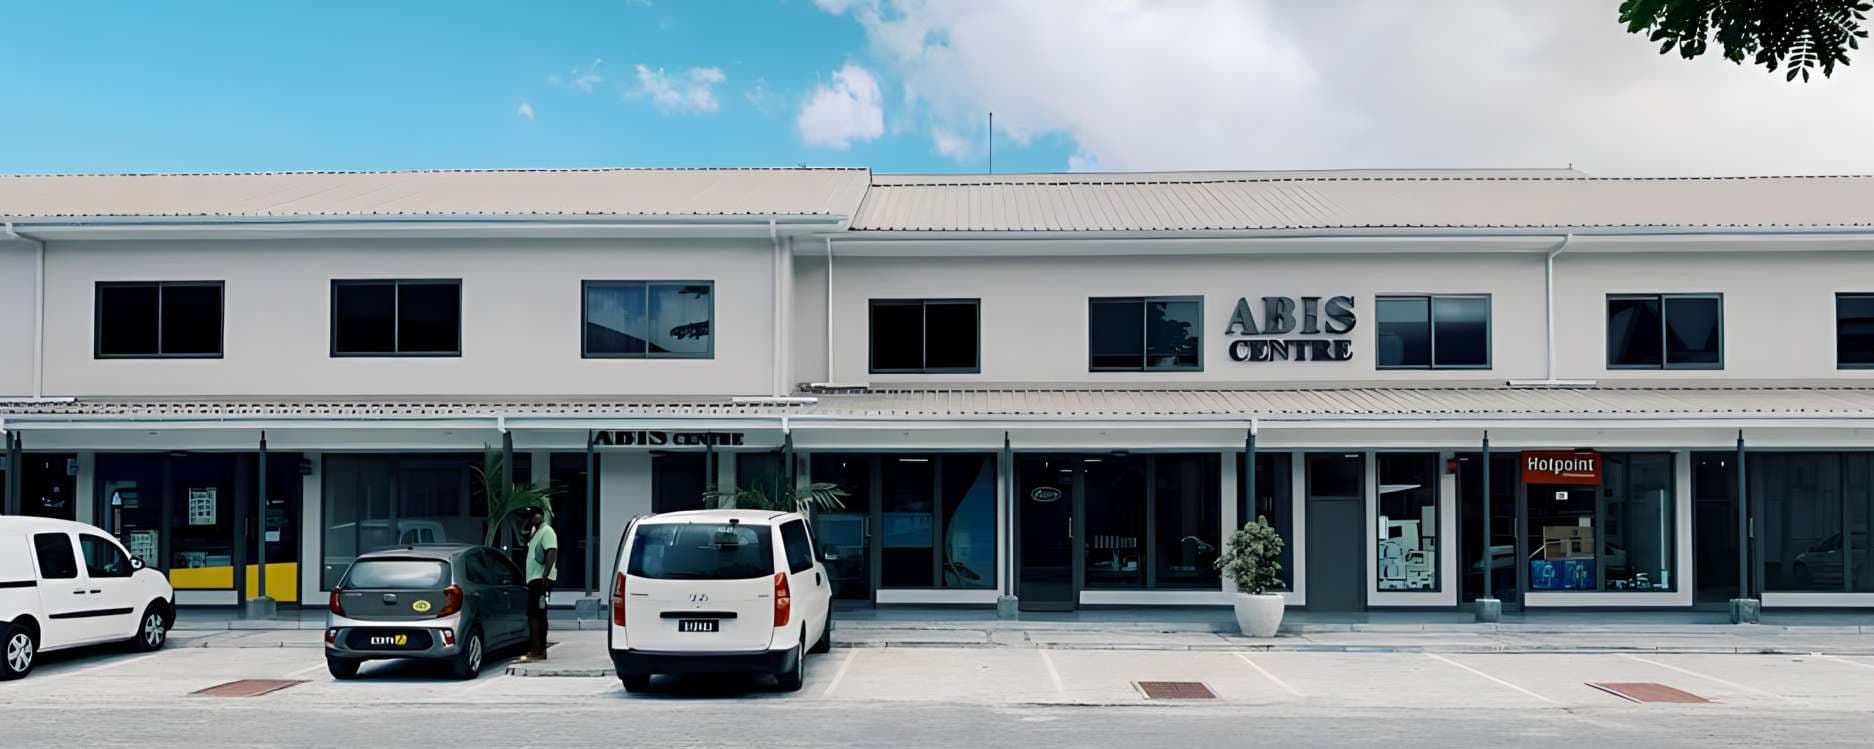 Abis Center